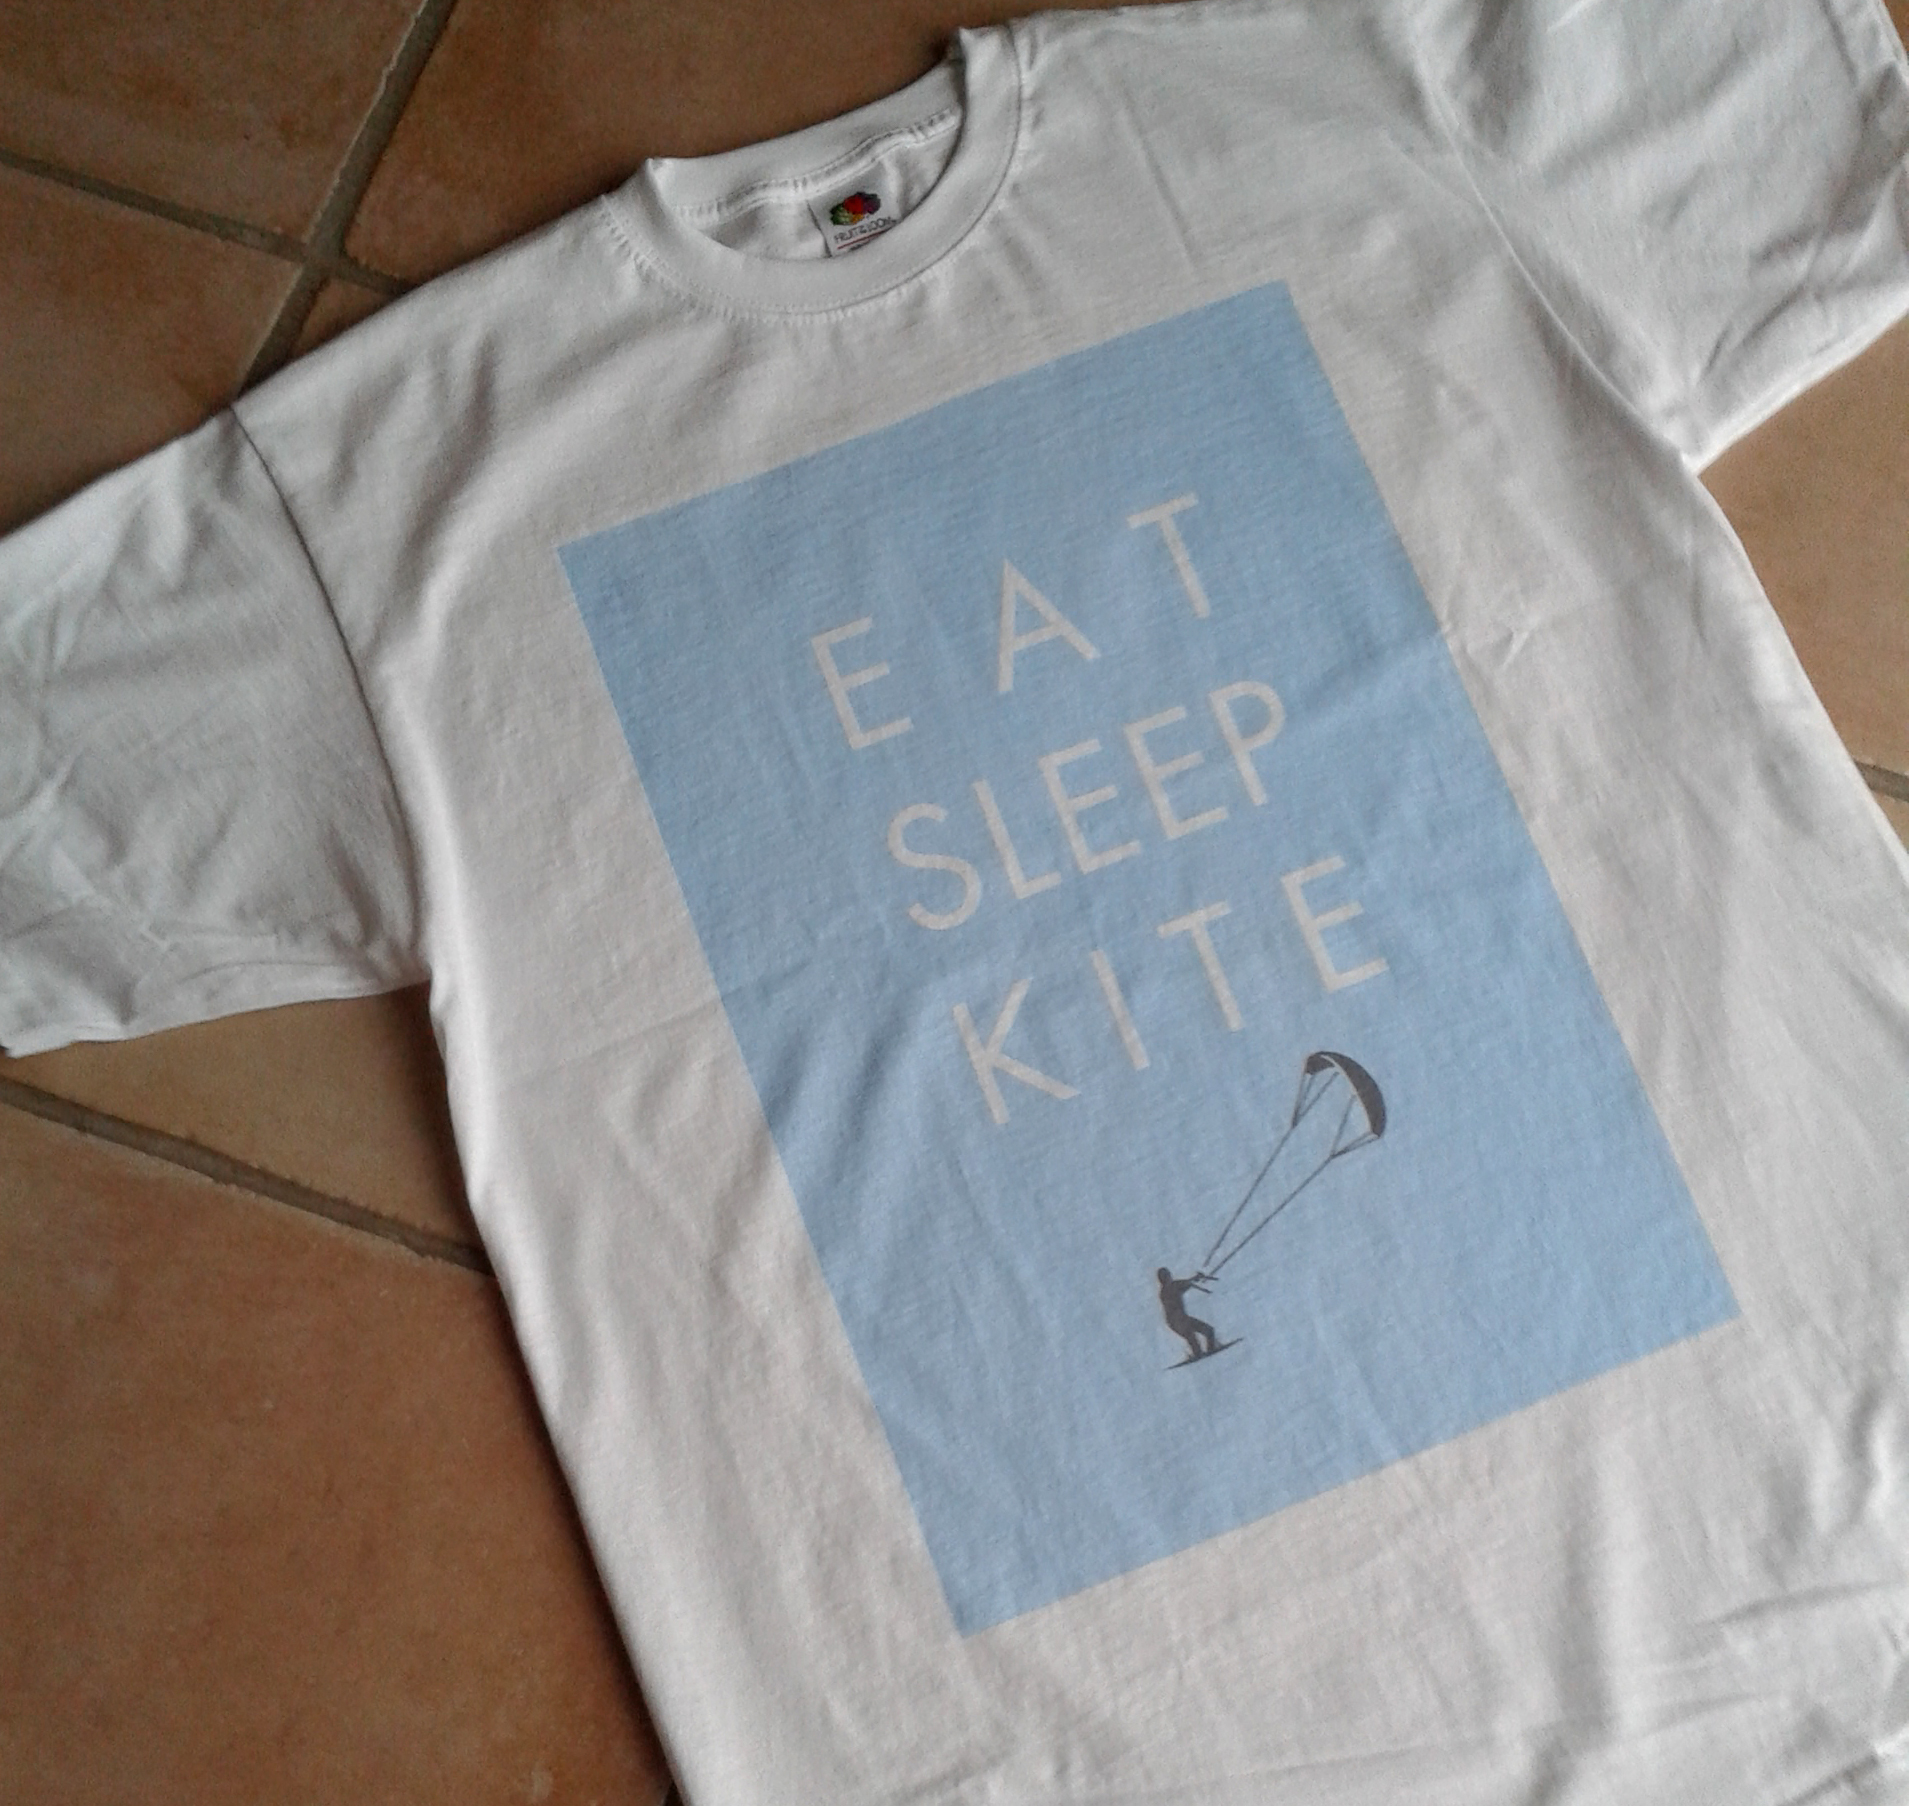 Eat sleep kite